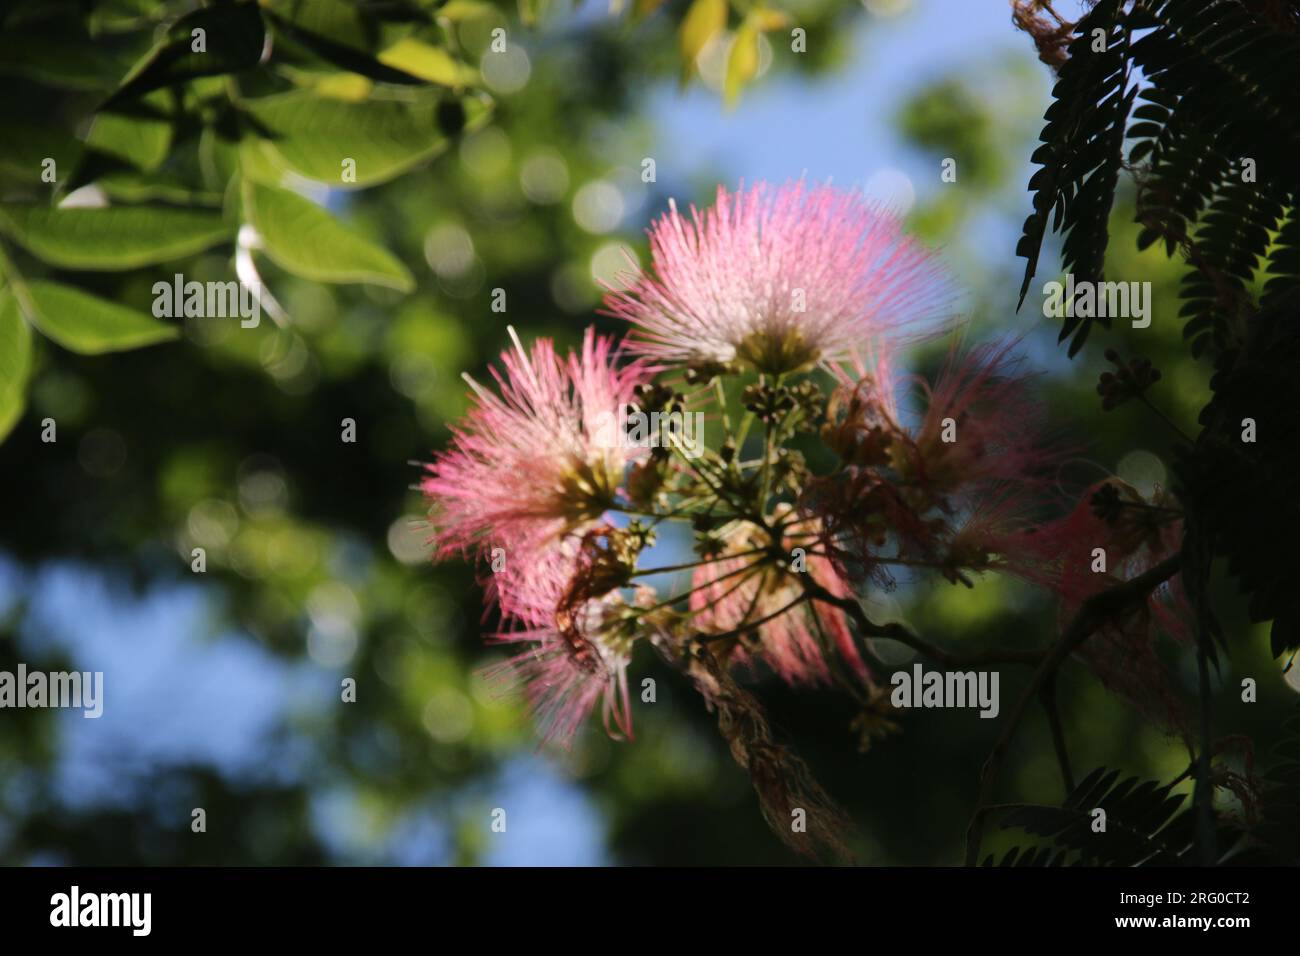 Abstraktes Bild von weichen, seidenrosa Blüten auf einem Mimosa-Baum. Stockfoto